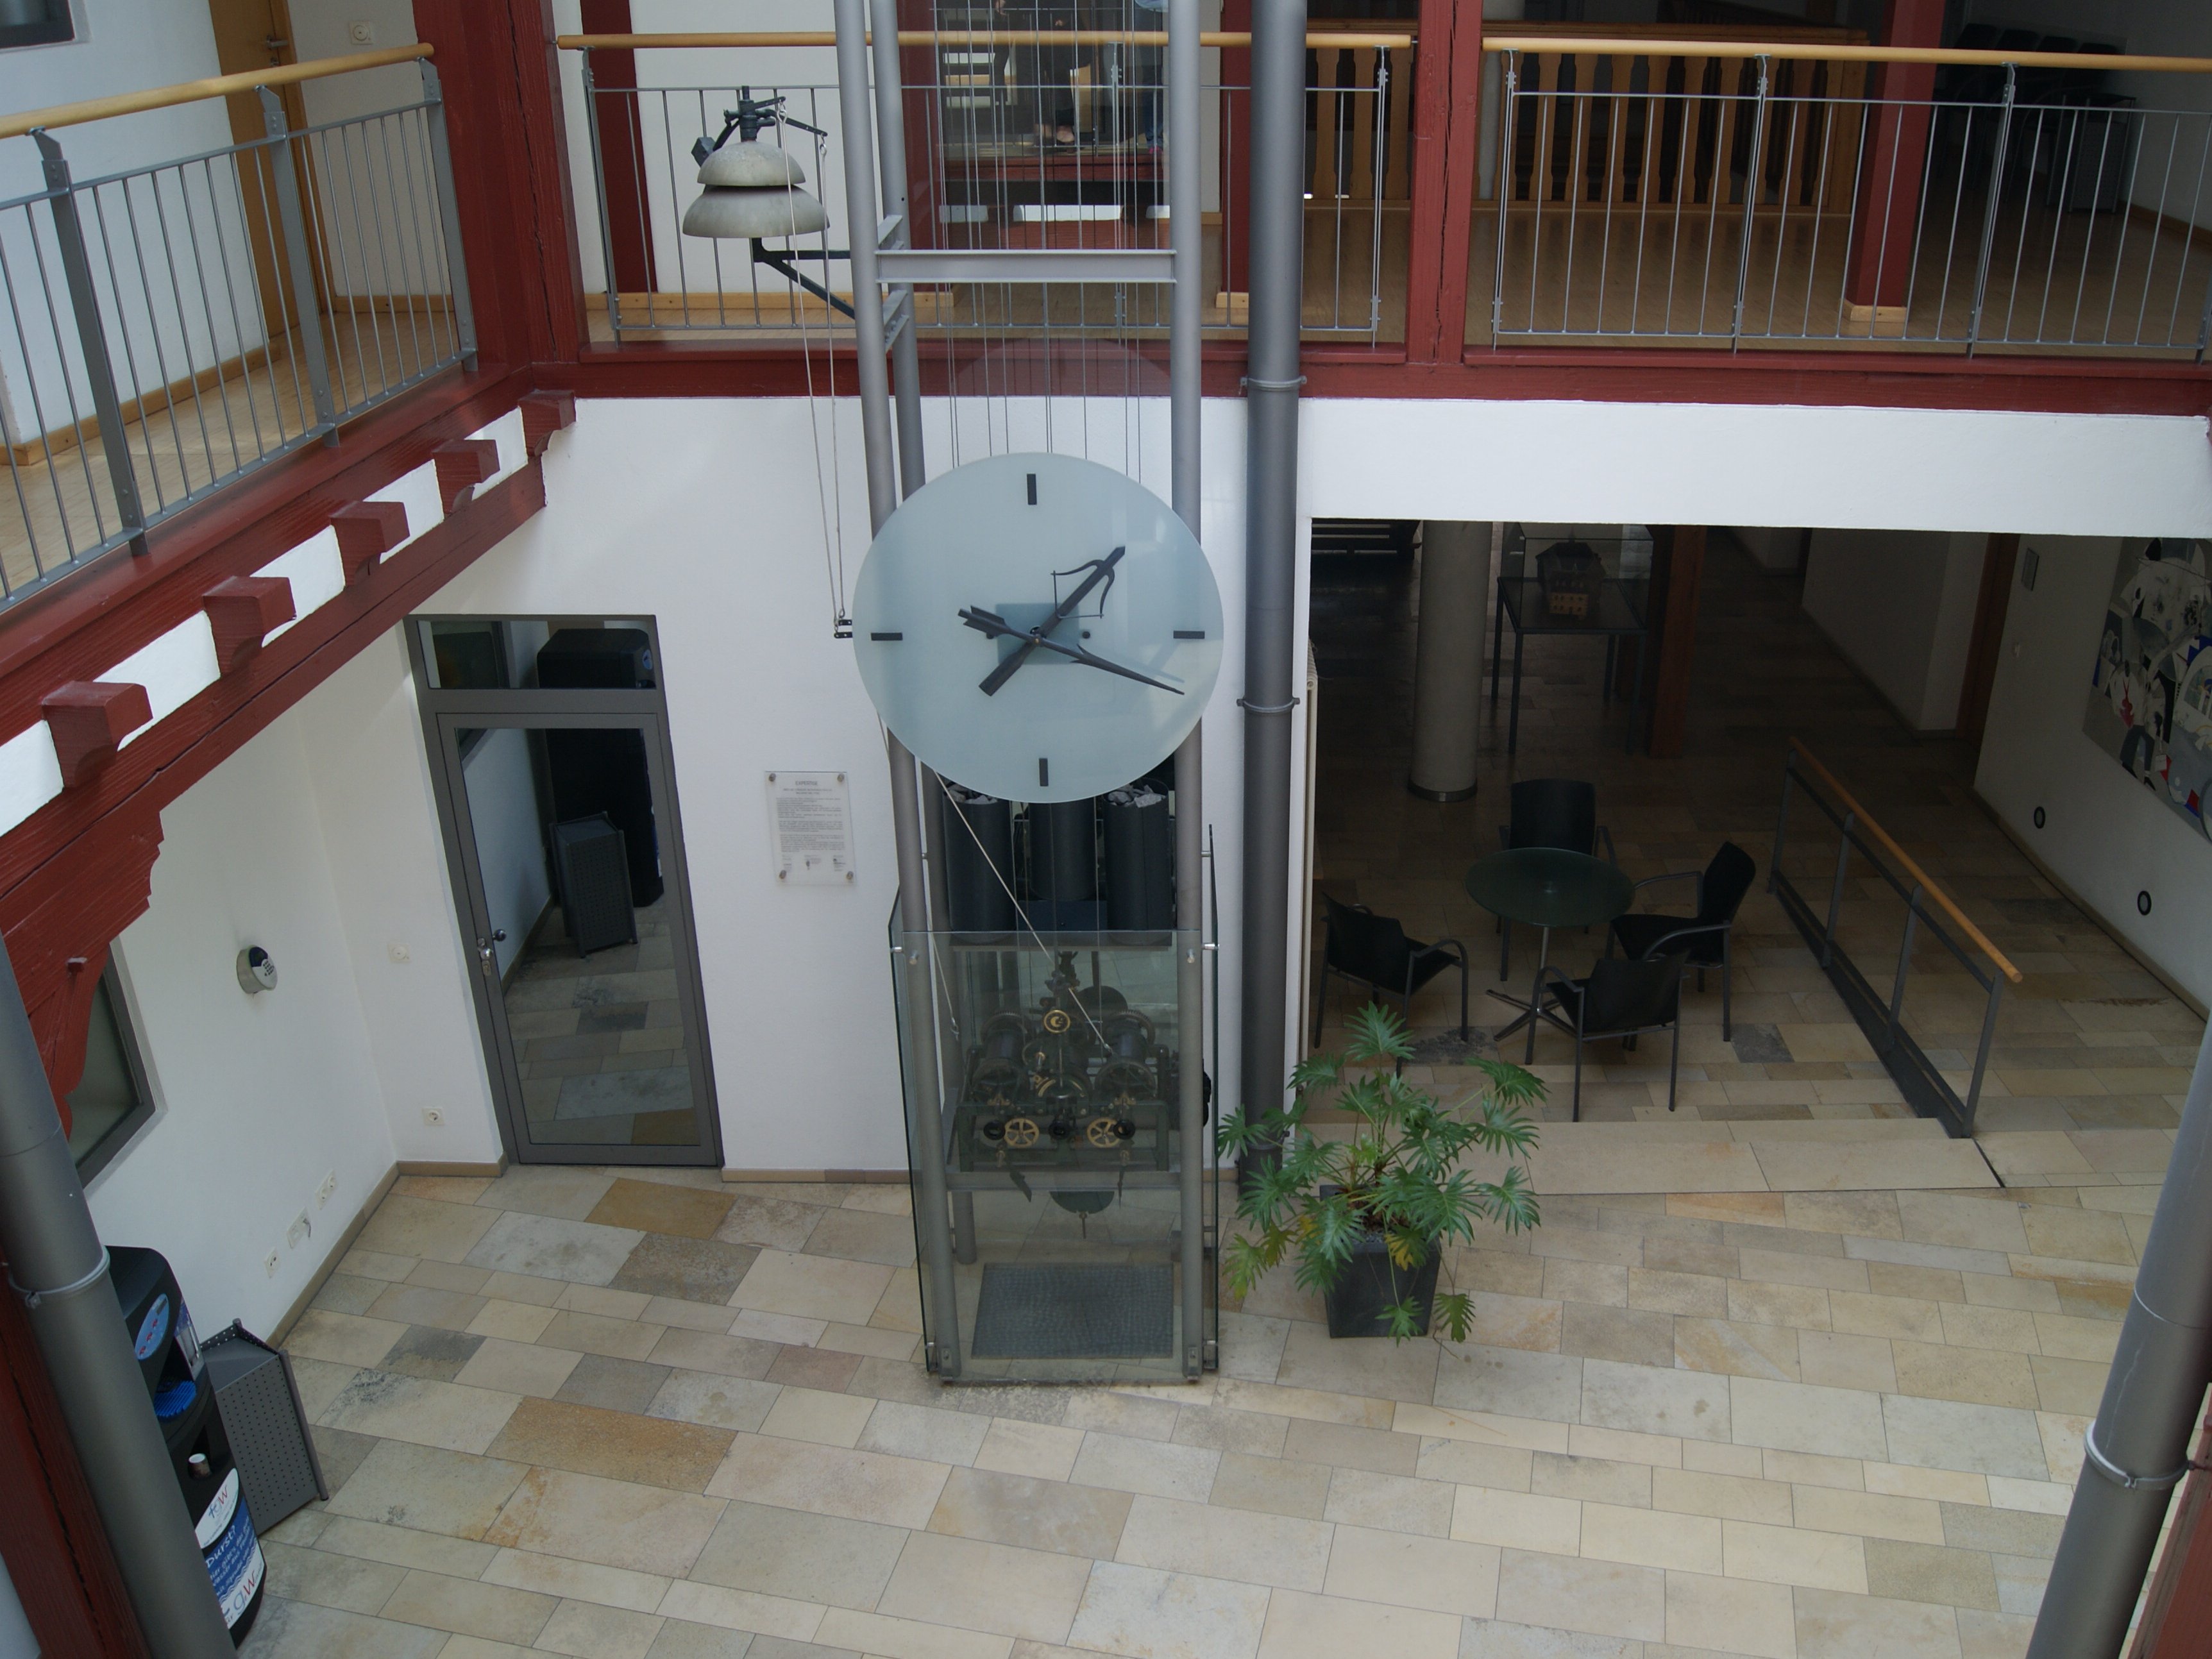 Das Atrium, Innenbereich im Rathaus mit alter Uhr